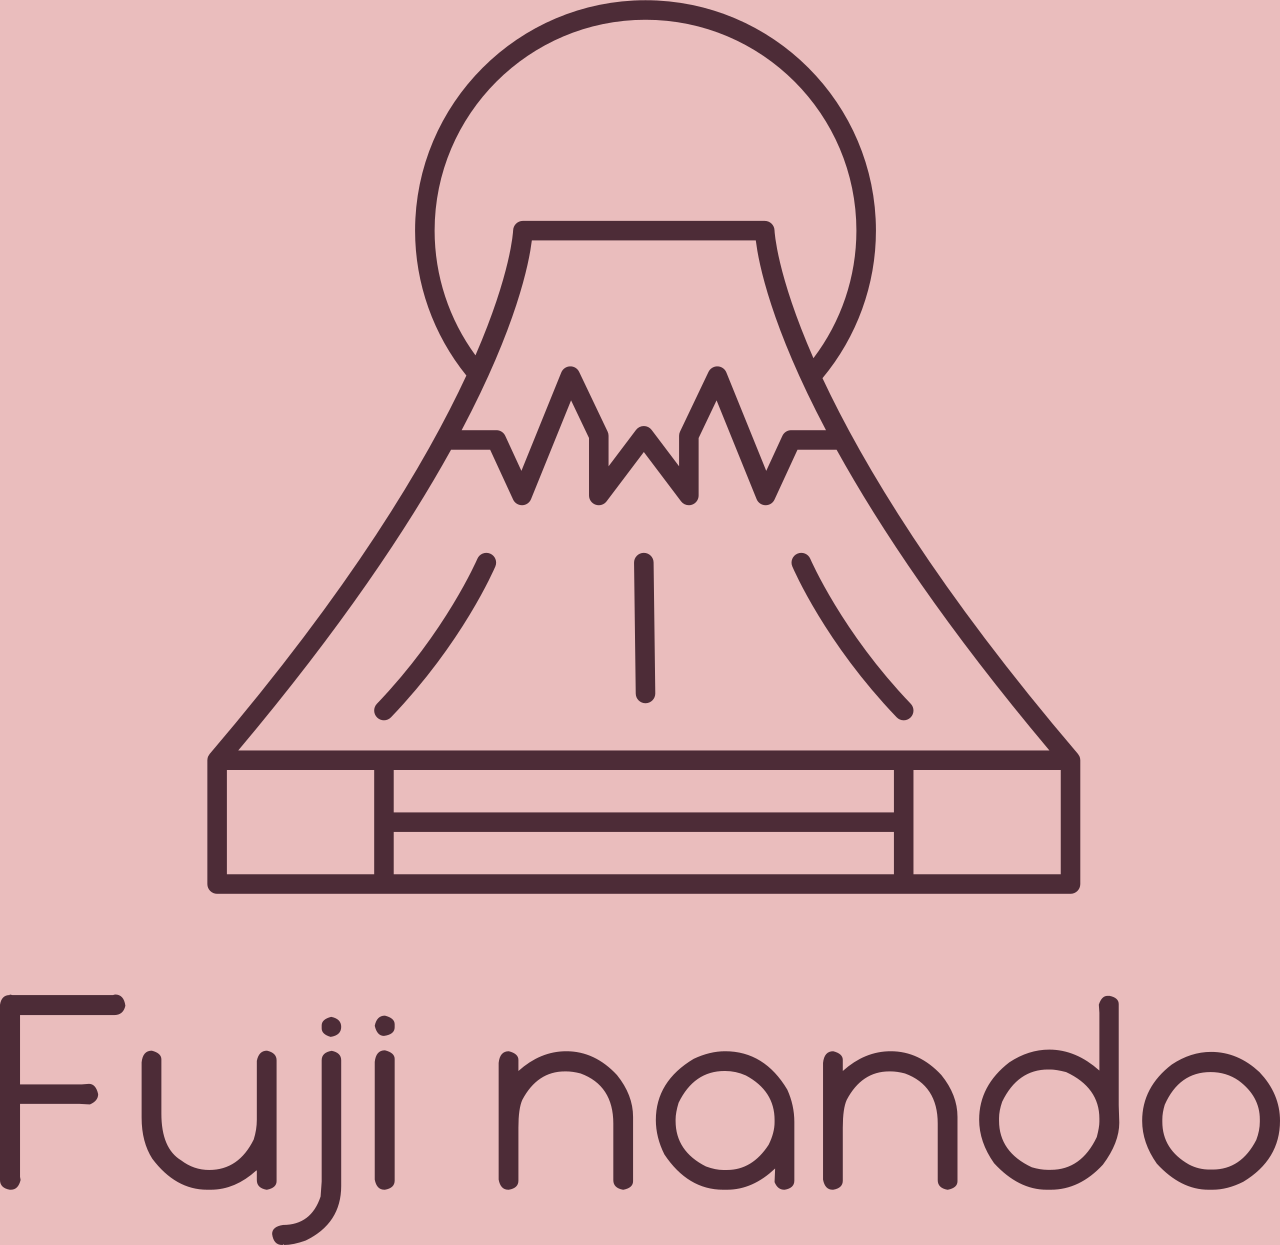 Fuji nando's logo